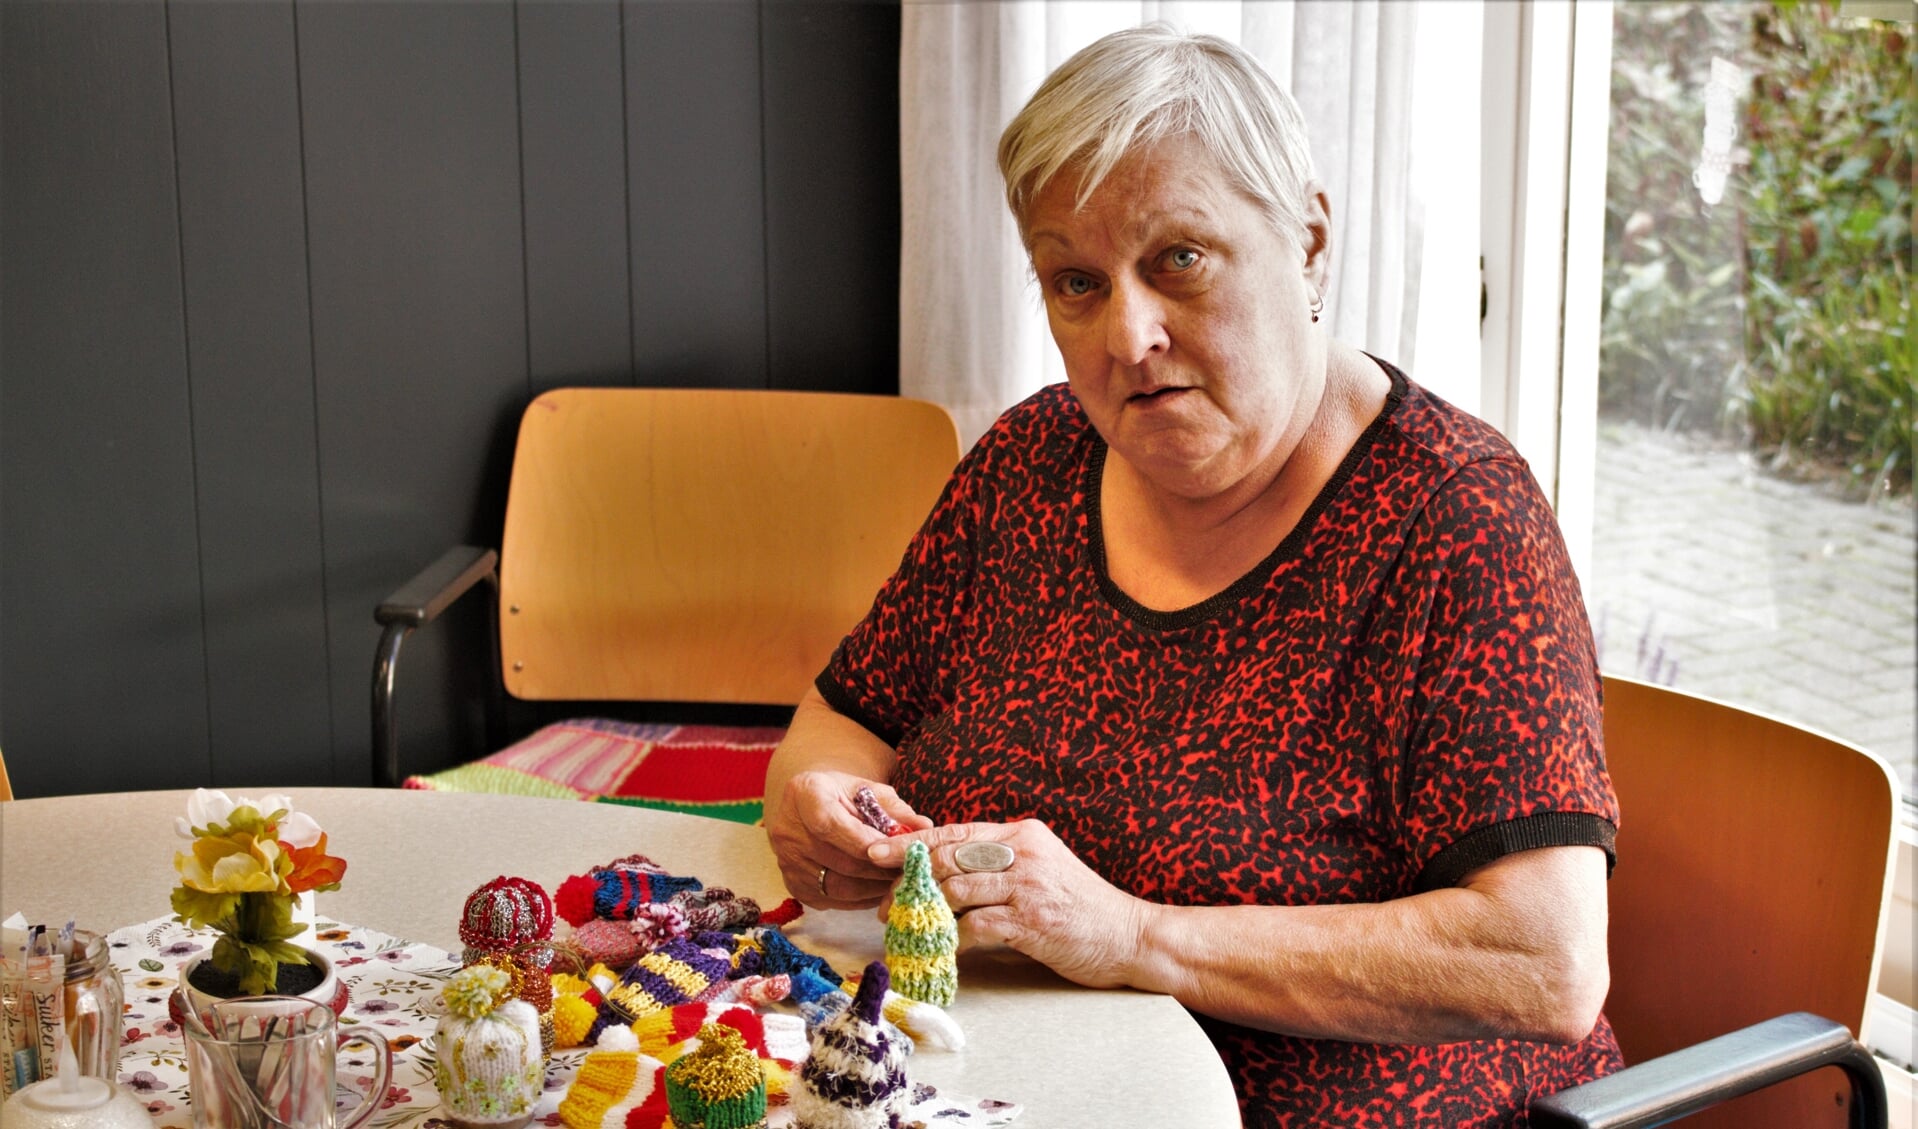 Jetty Lobregt organiseert in huiskamer 'T Meijerke activiteiten voor (eenzame) oudere mensen uit de wijk. Meerdere keren per week komen ze samen om onder andere spelletjes te doen en te handwerken.